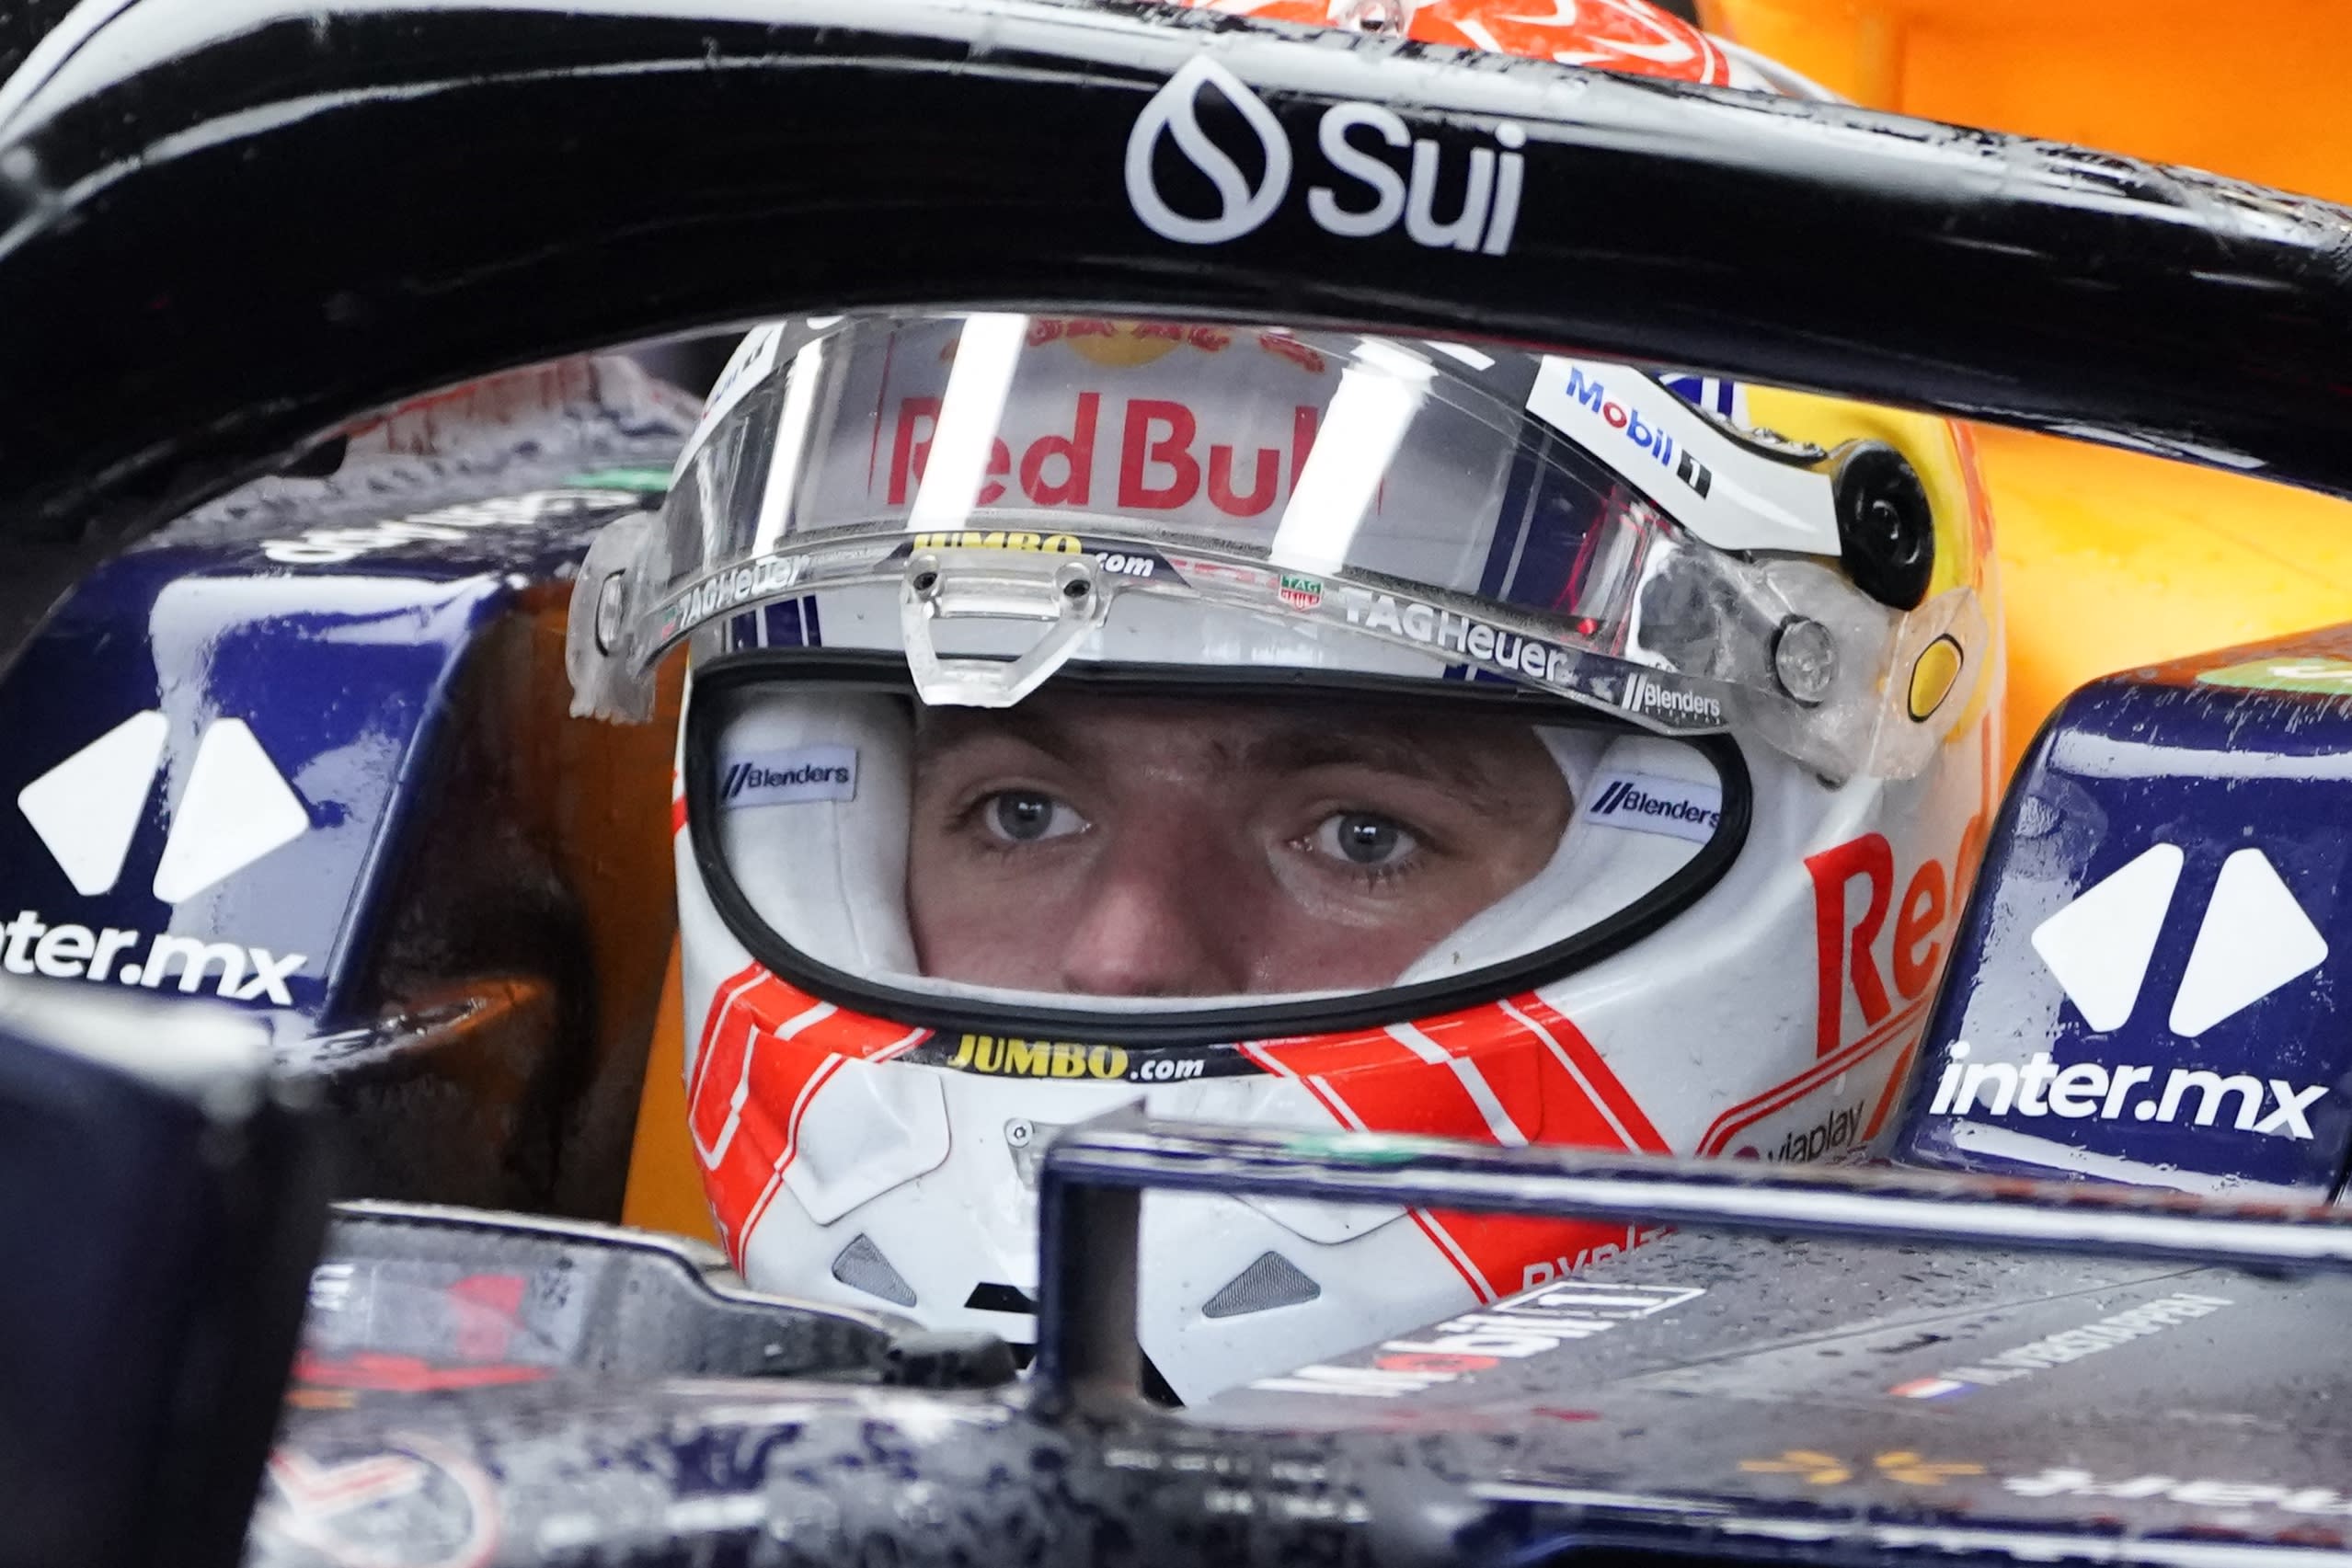 ZIEN: Max Verstappen showt speciale helm voor Grand Prix Zandvoort